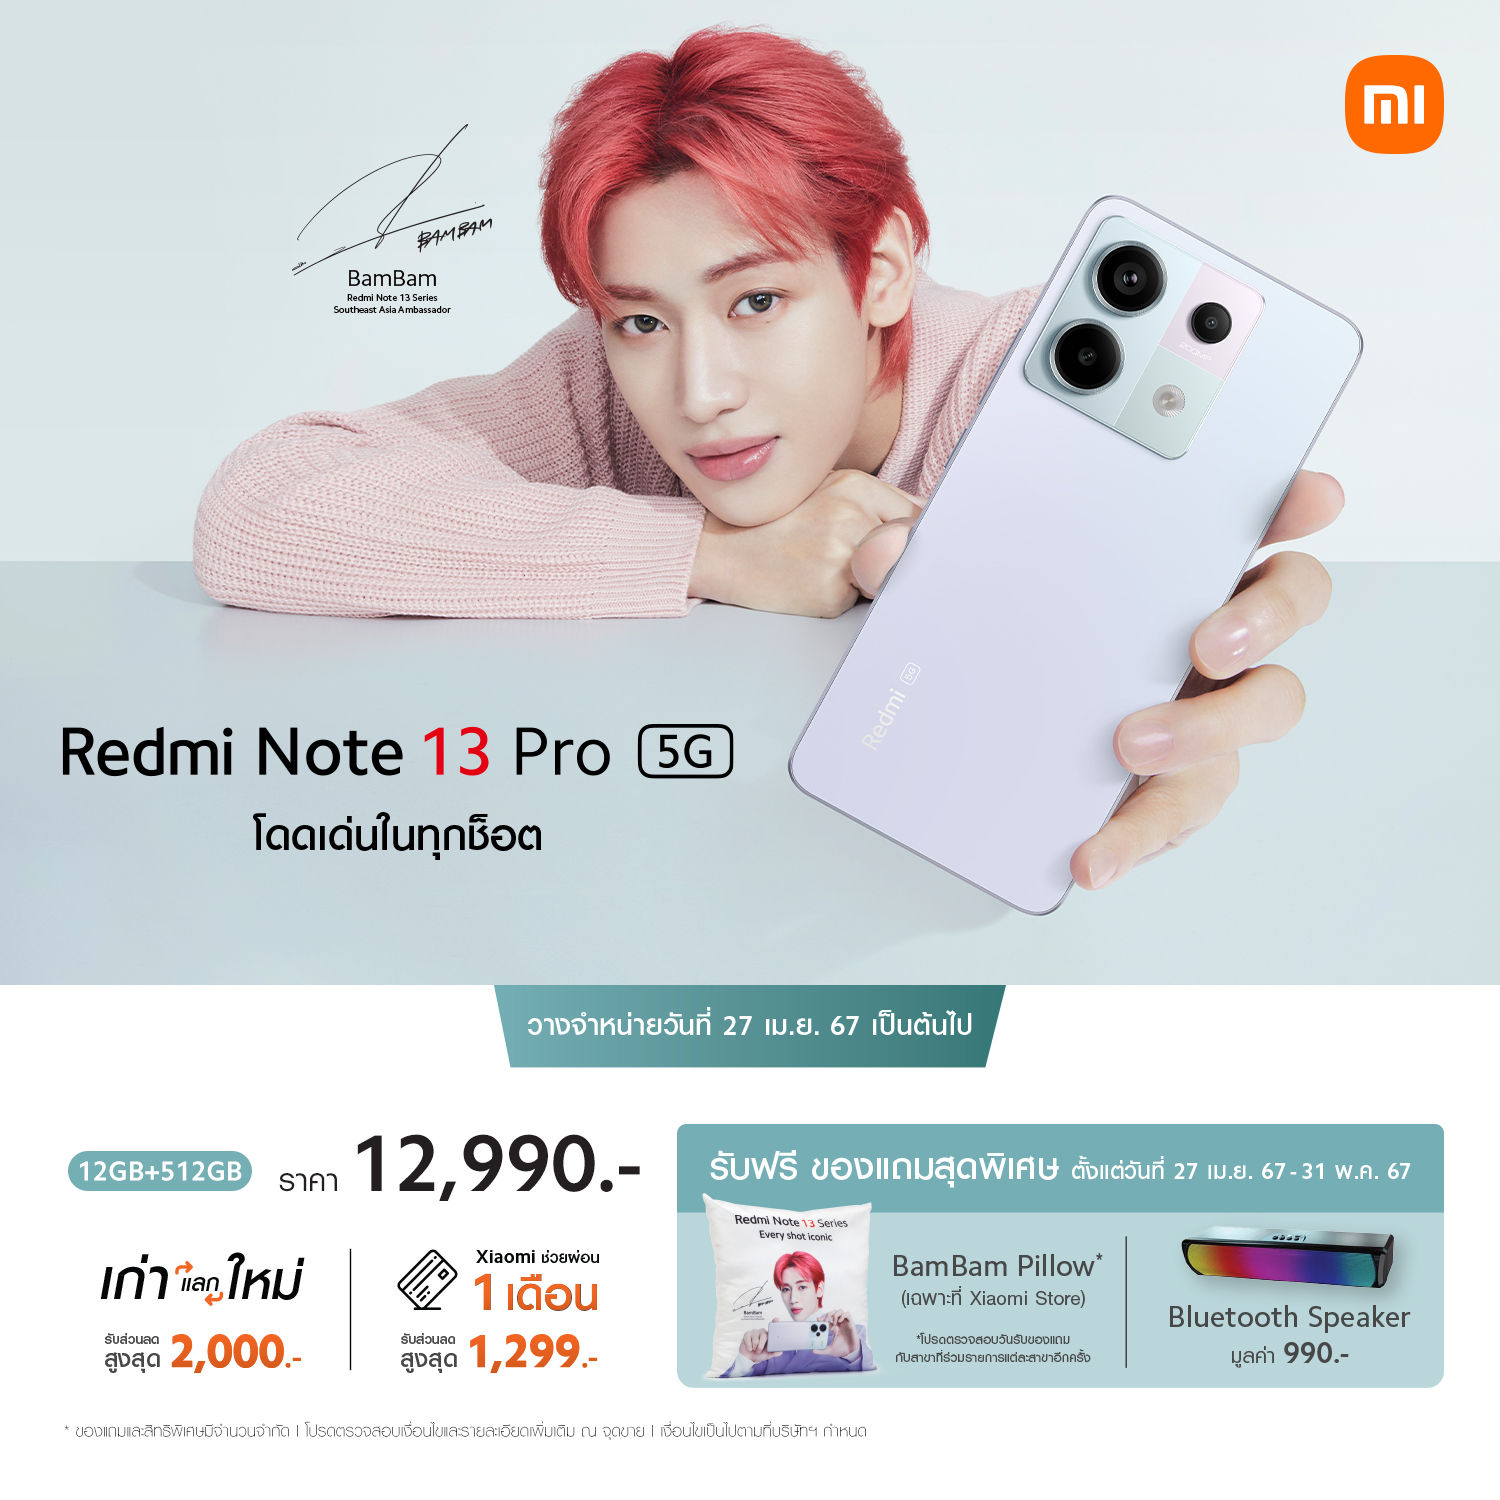 Redmi Note 13 Pro 5G วางจำหน่ายในประเทศไทยราคา 12,990 บาท